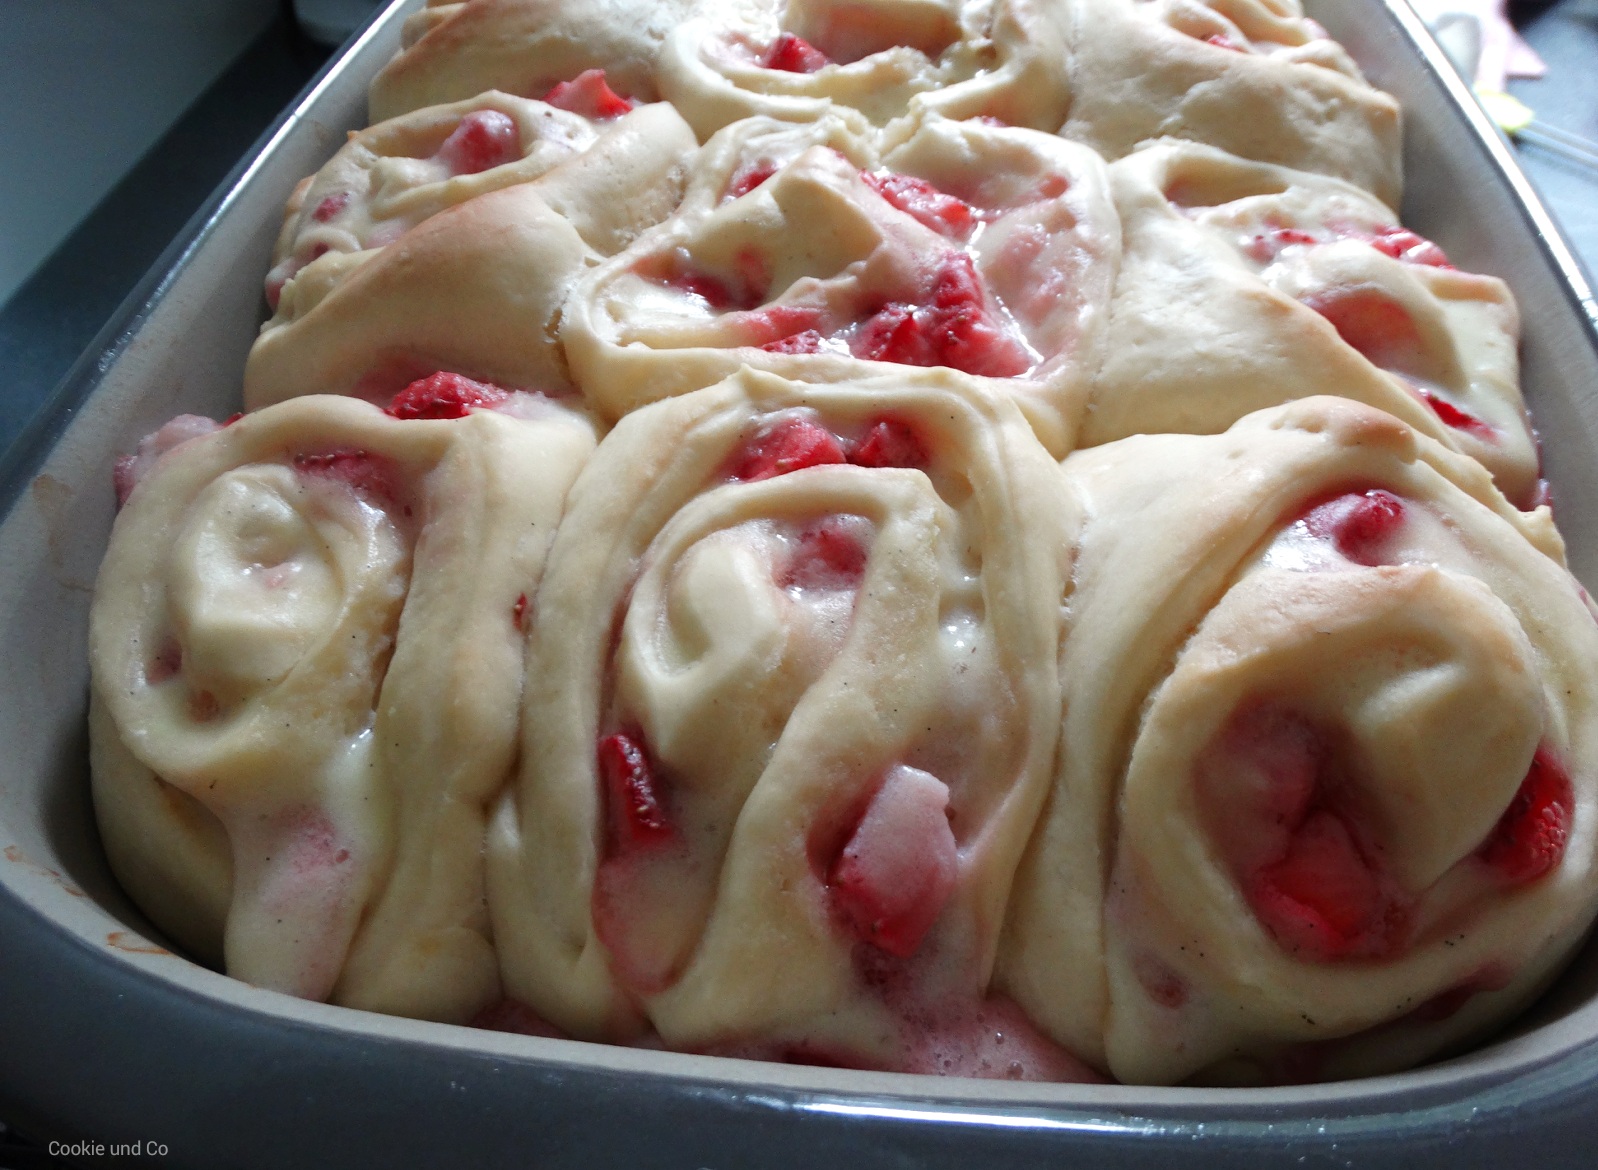 Erdbeer-Pudding-Schnecken (Strawberry Rolls) • Cookie und Co